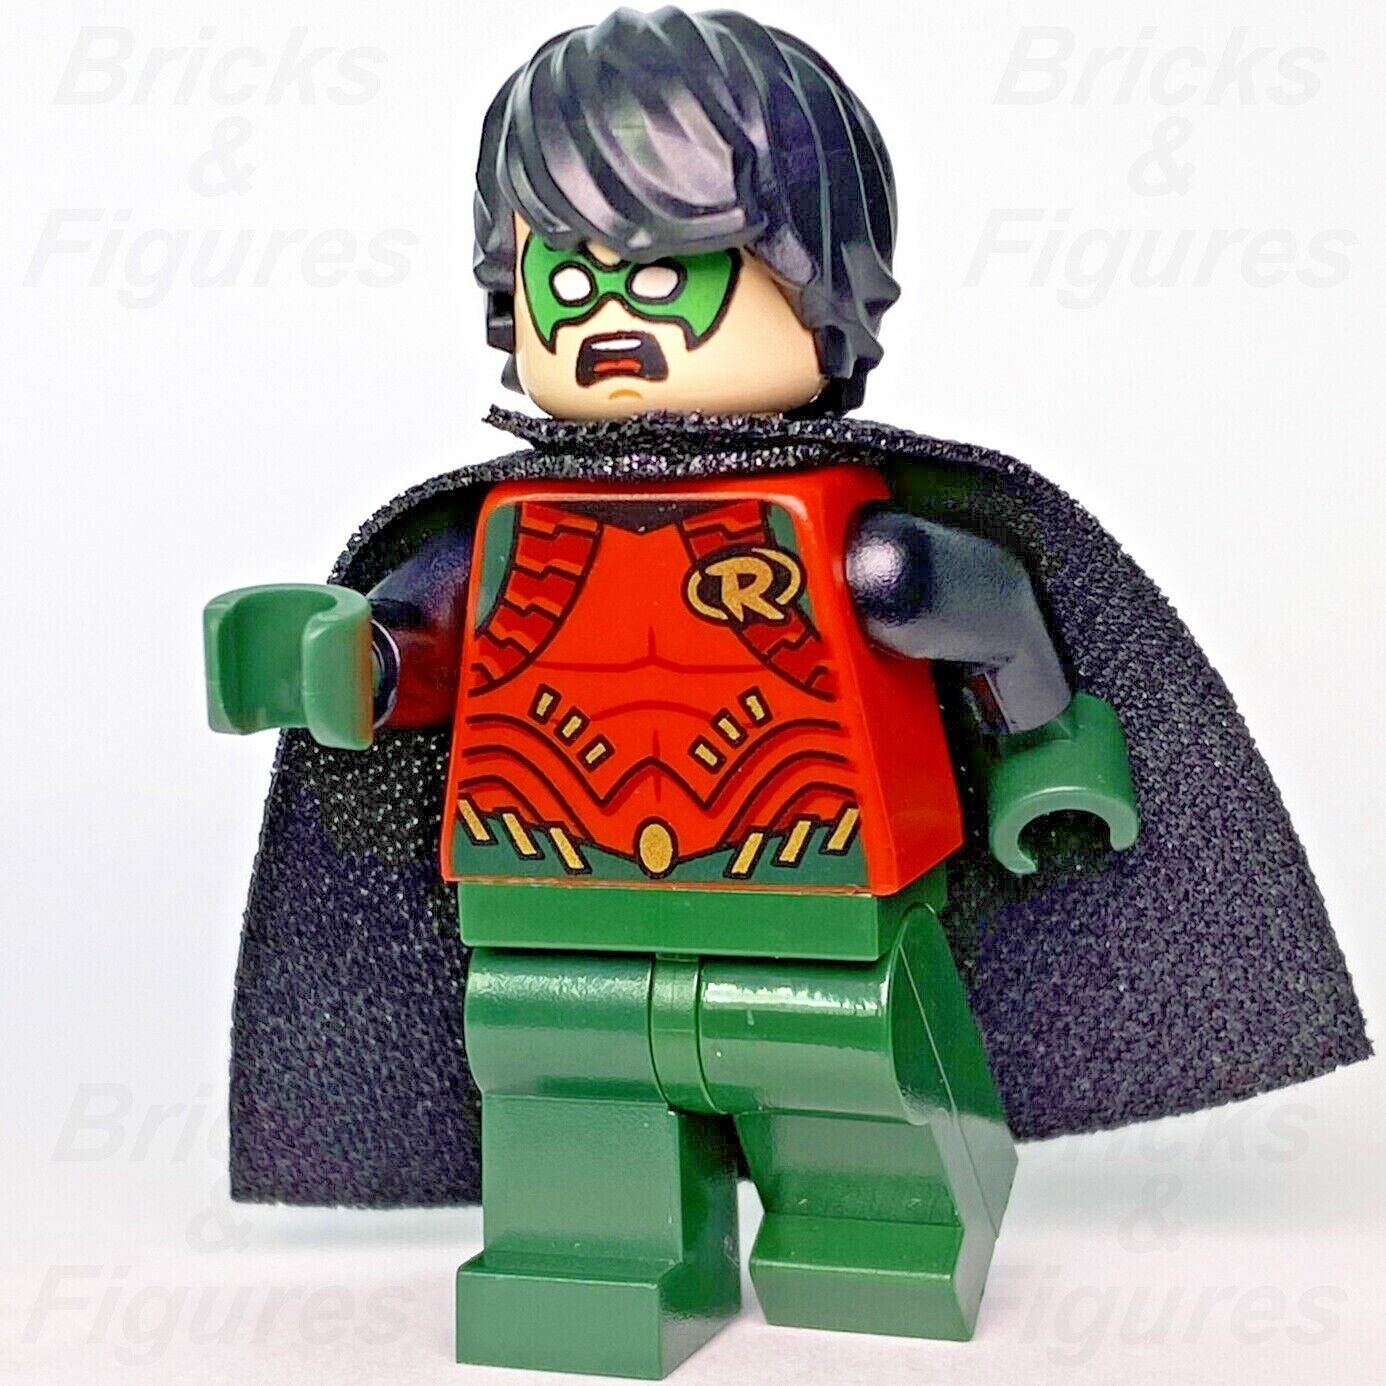 DC Super Heroes LEGO The Batman Grey Suit Minifigure 76183 76179 76181 sh786